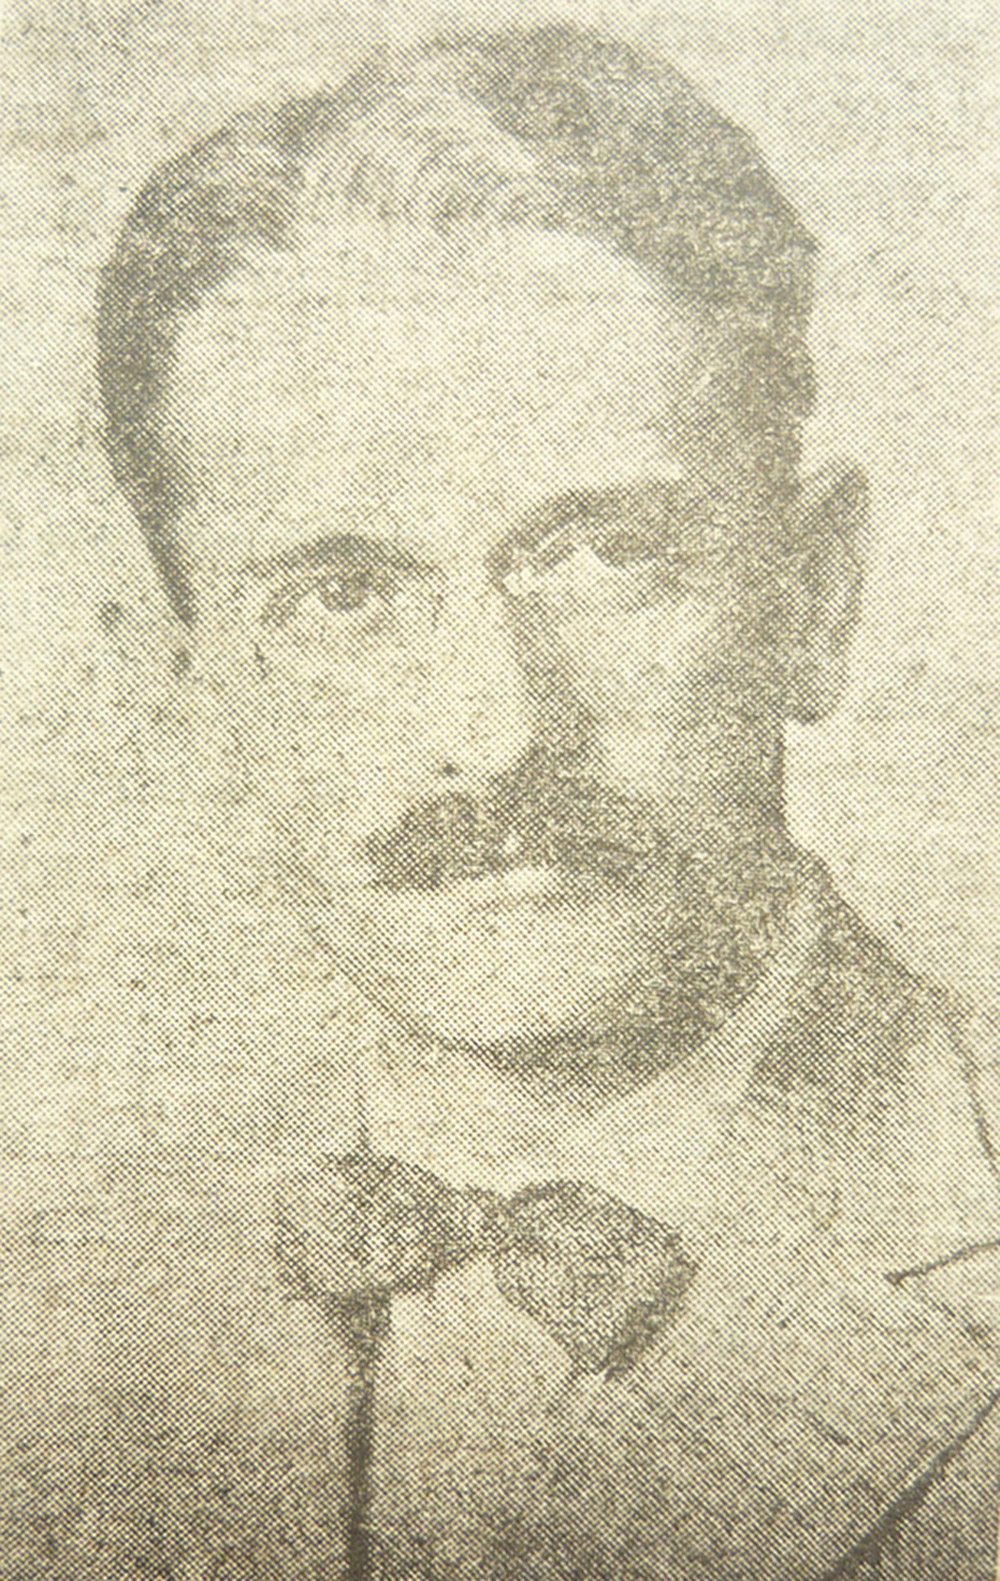 Prof. Mihail Șerban